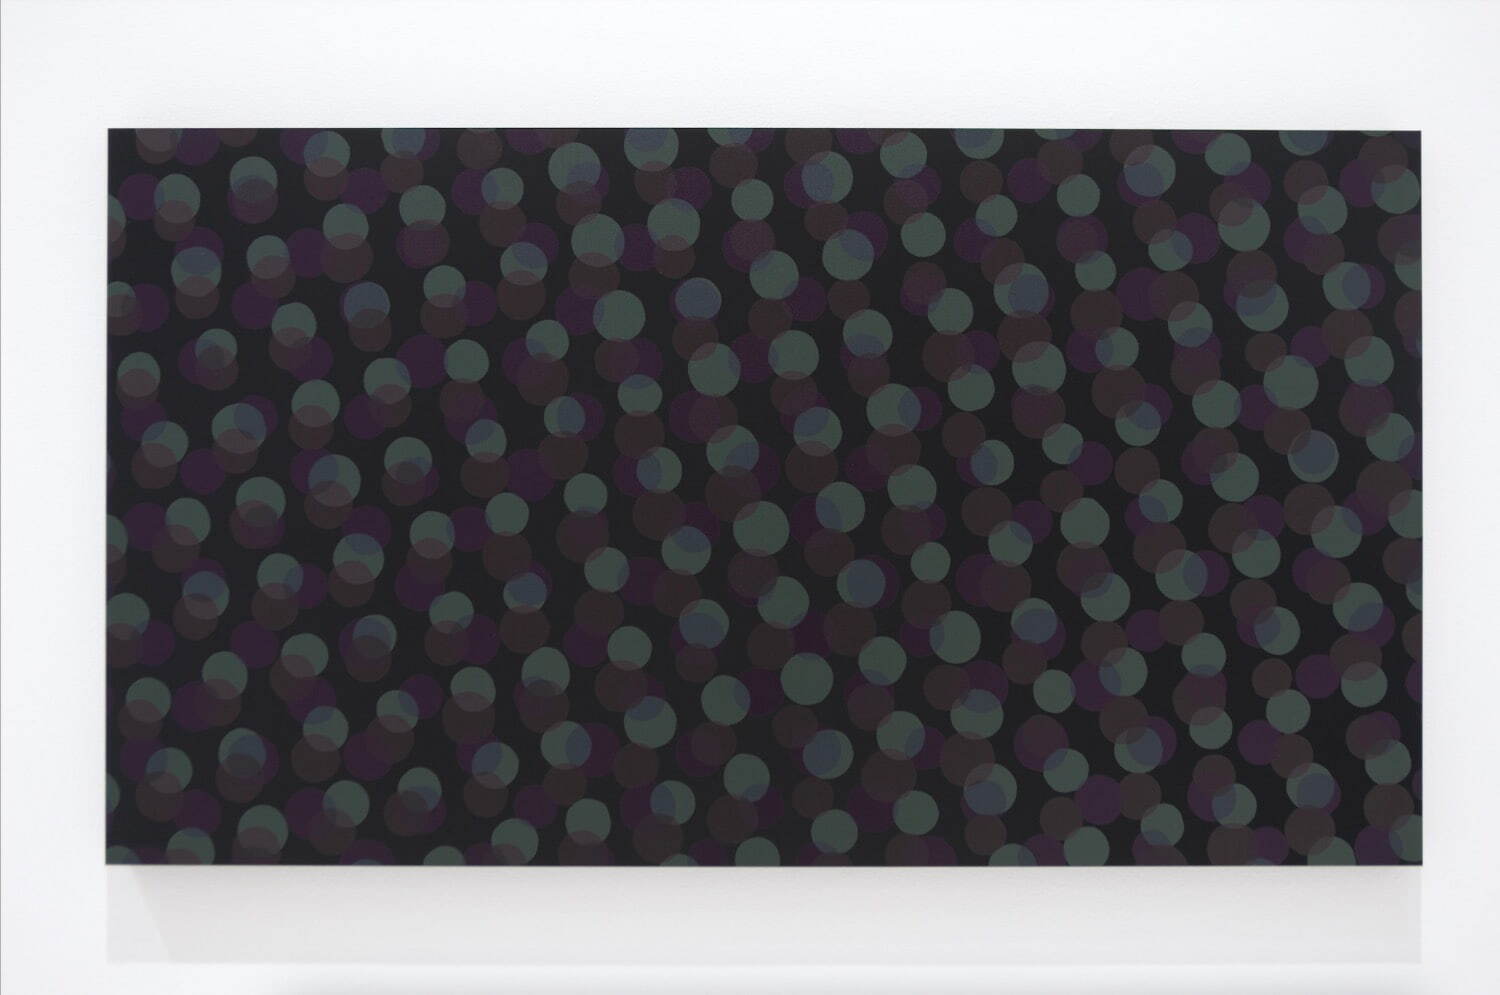 名和晃平《Dot Array - Black#239》2022年
UVプリント、紙、アクリル、木製パネル 56×100cm
提供：Gallery Nomart
撮影：加藤成文